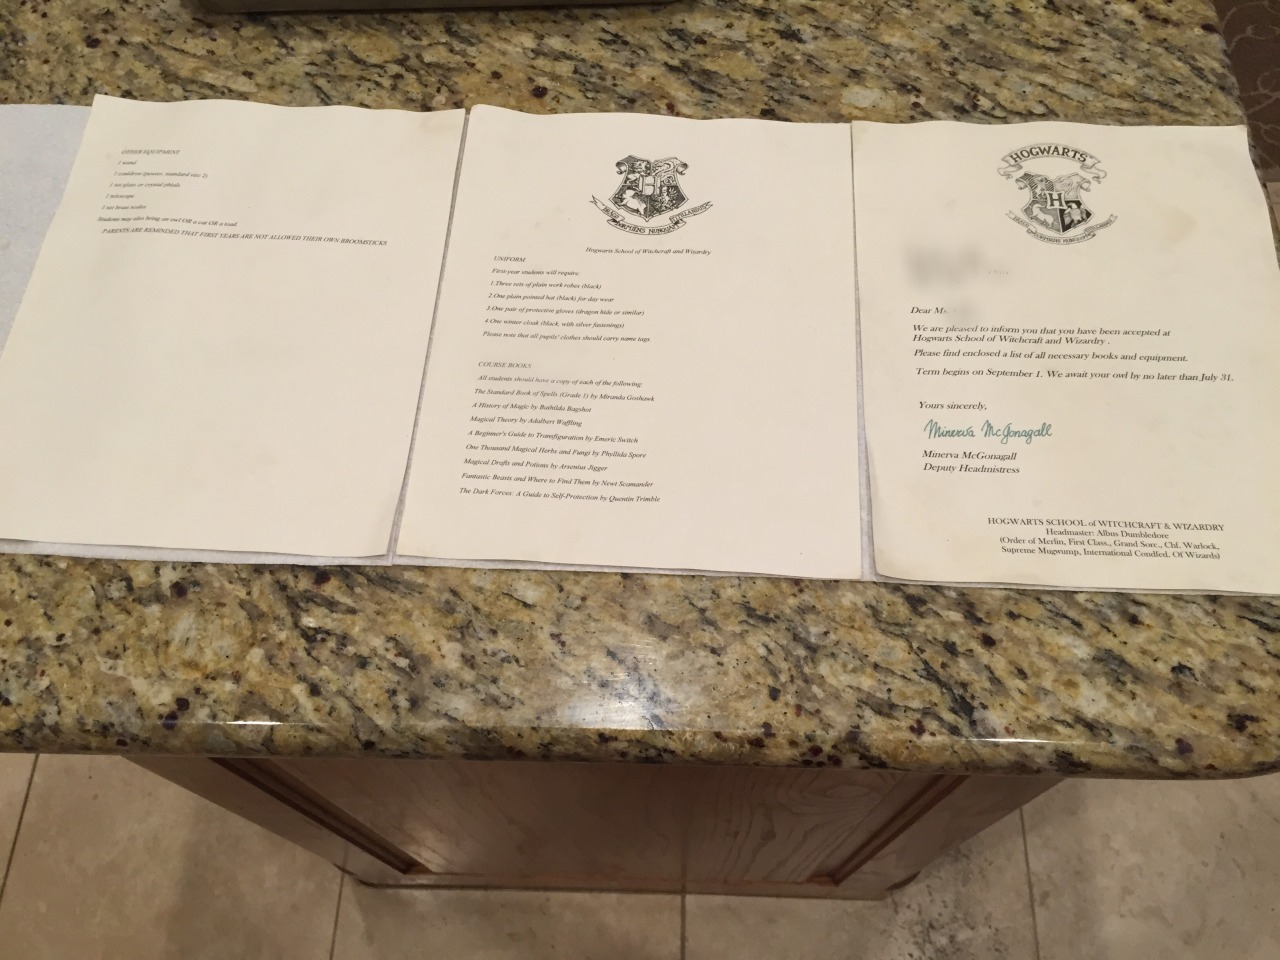 Hogwarts Acceptance Letter TEMPLATE by Hogwarts-Bound on DeviantArt